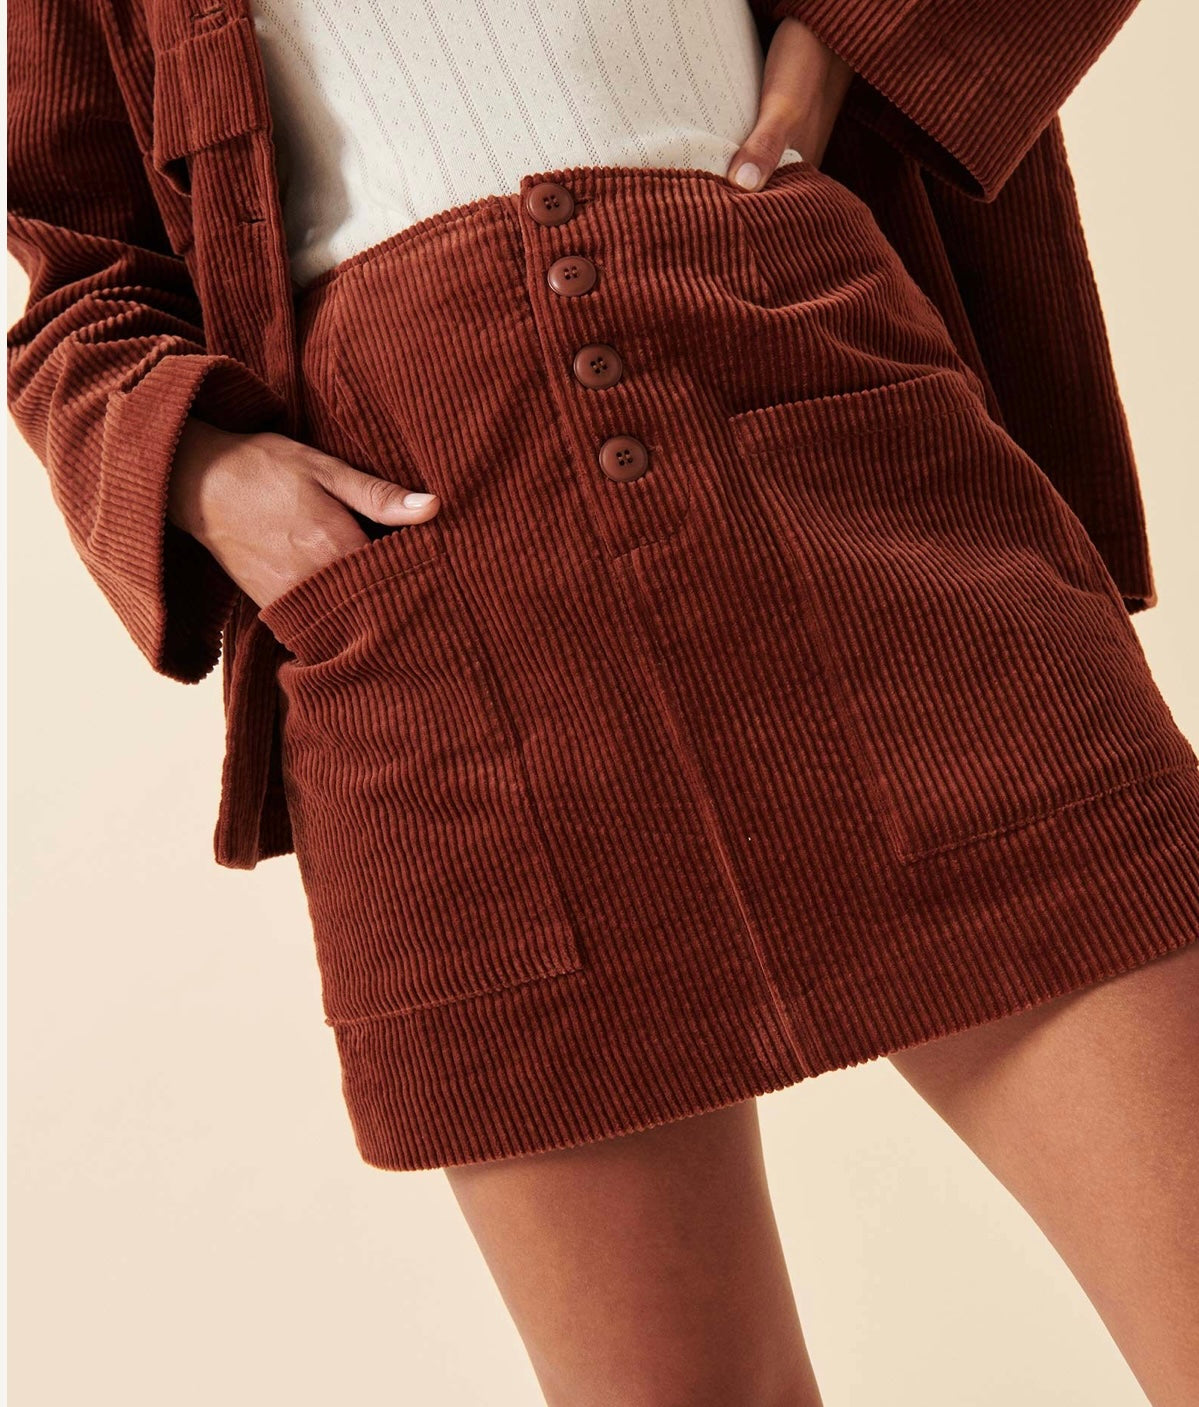 Francoise Cord Mini Skirt in Chestnut